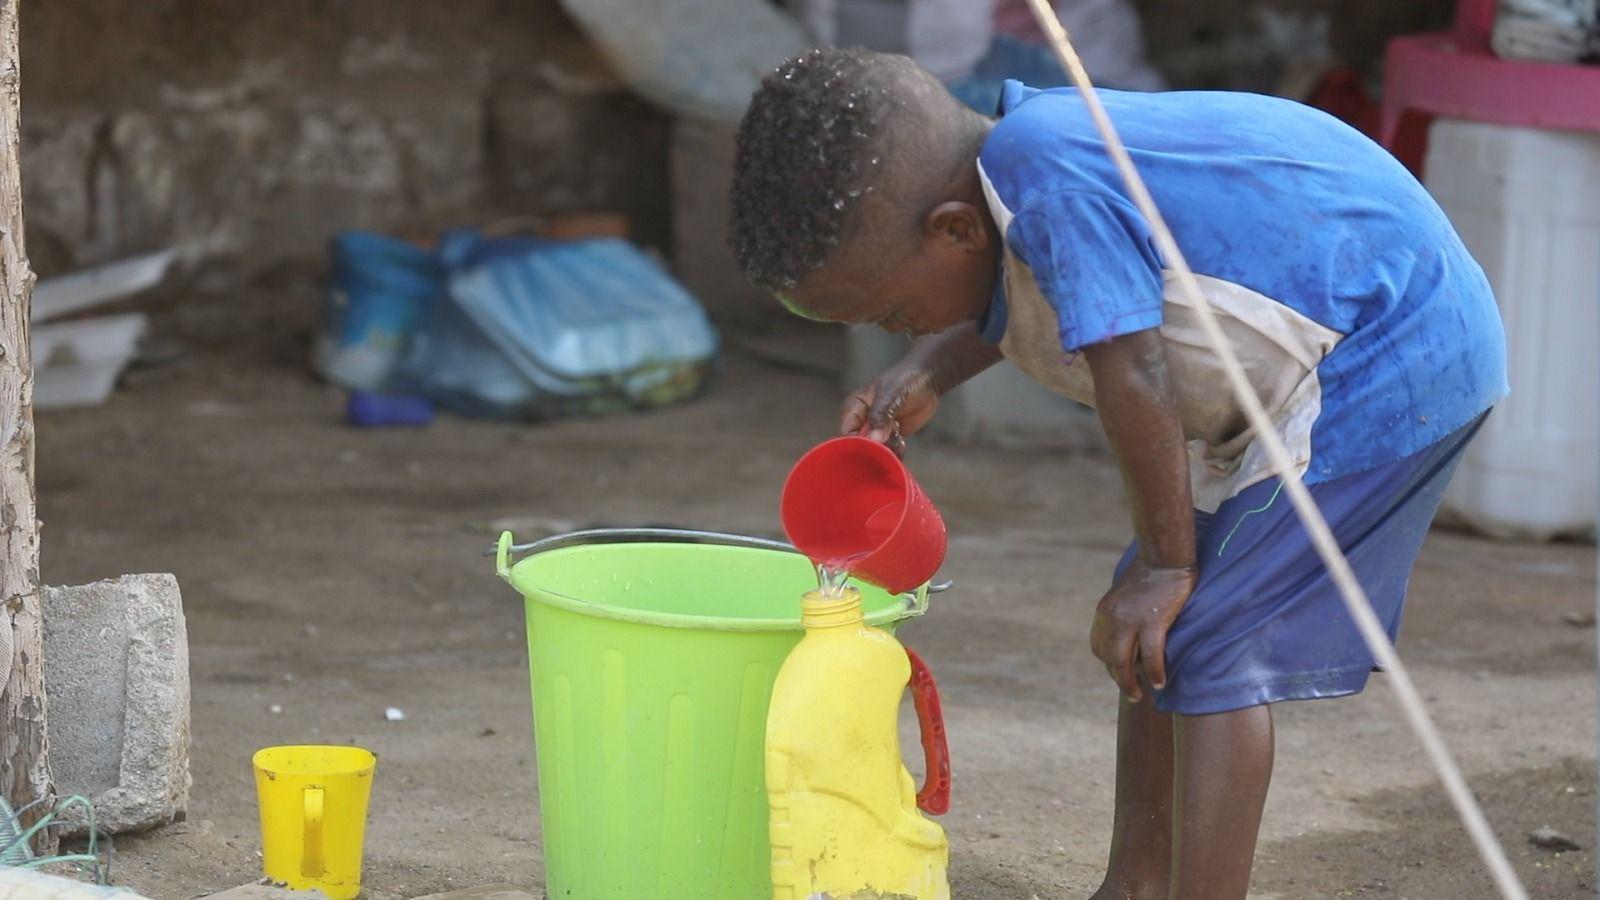 تعاني السودان نقصا حادا في الخدمات الأساسية مثل الكهرباء ومياه الشرب